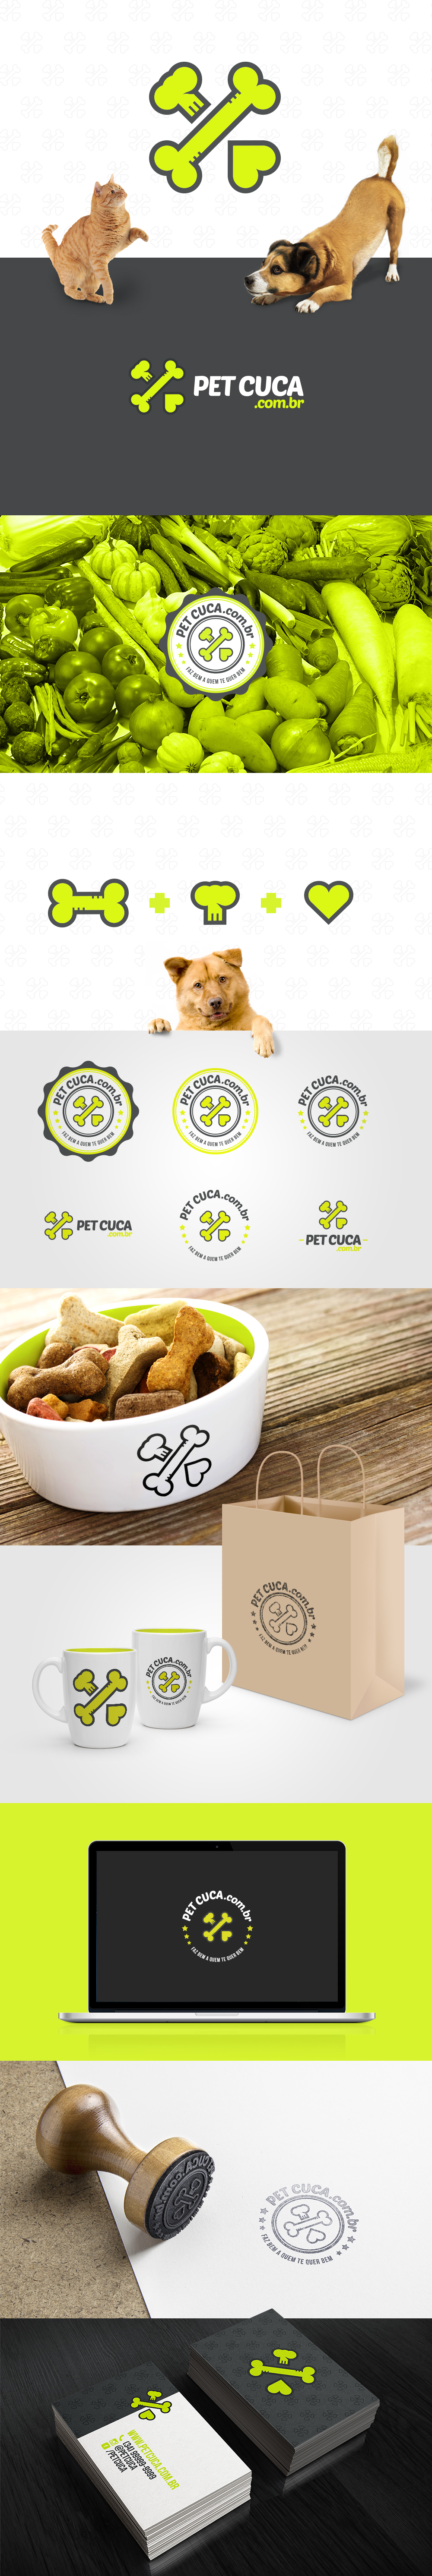 Pet Food  Cuca petcuca logo branding  identidade